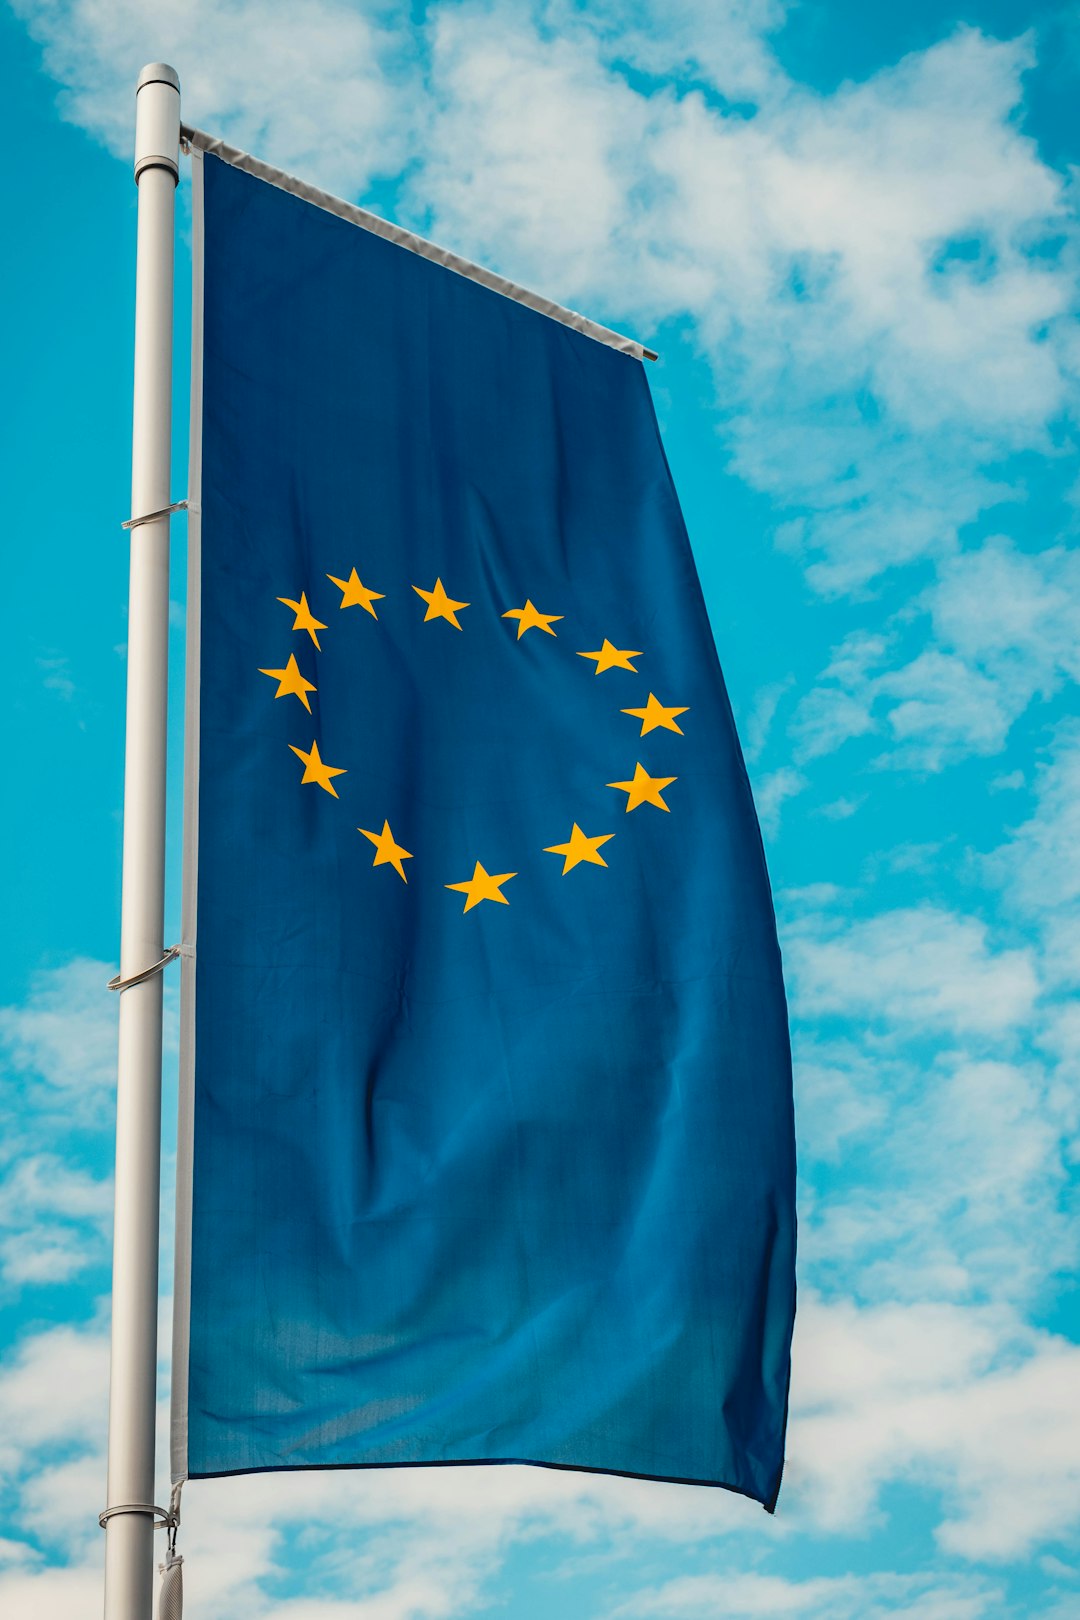 Rôle des Etats et de l'Union européenne dans le monde numérique : une approche privilégiée par le groupe Régulation de l'Agora 41